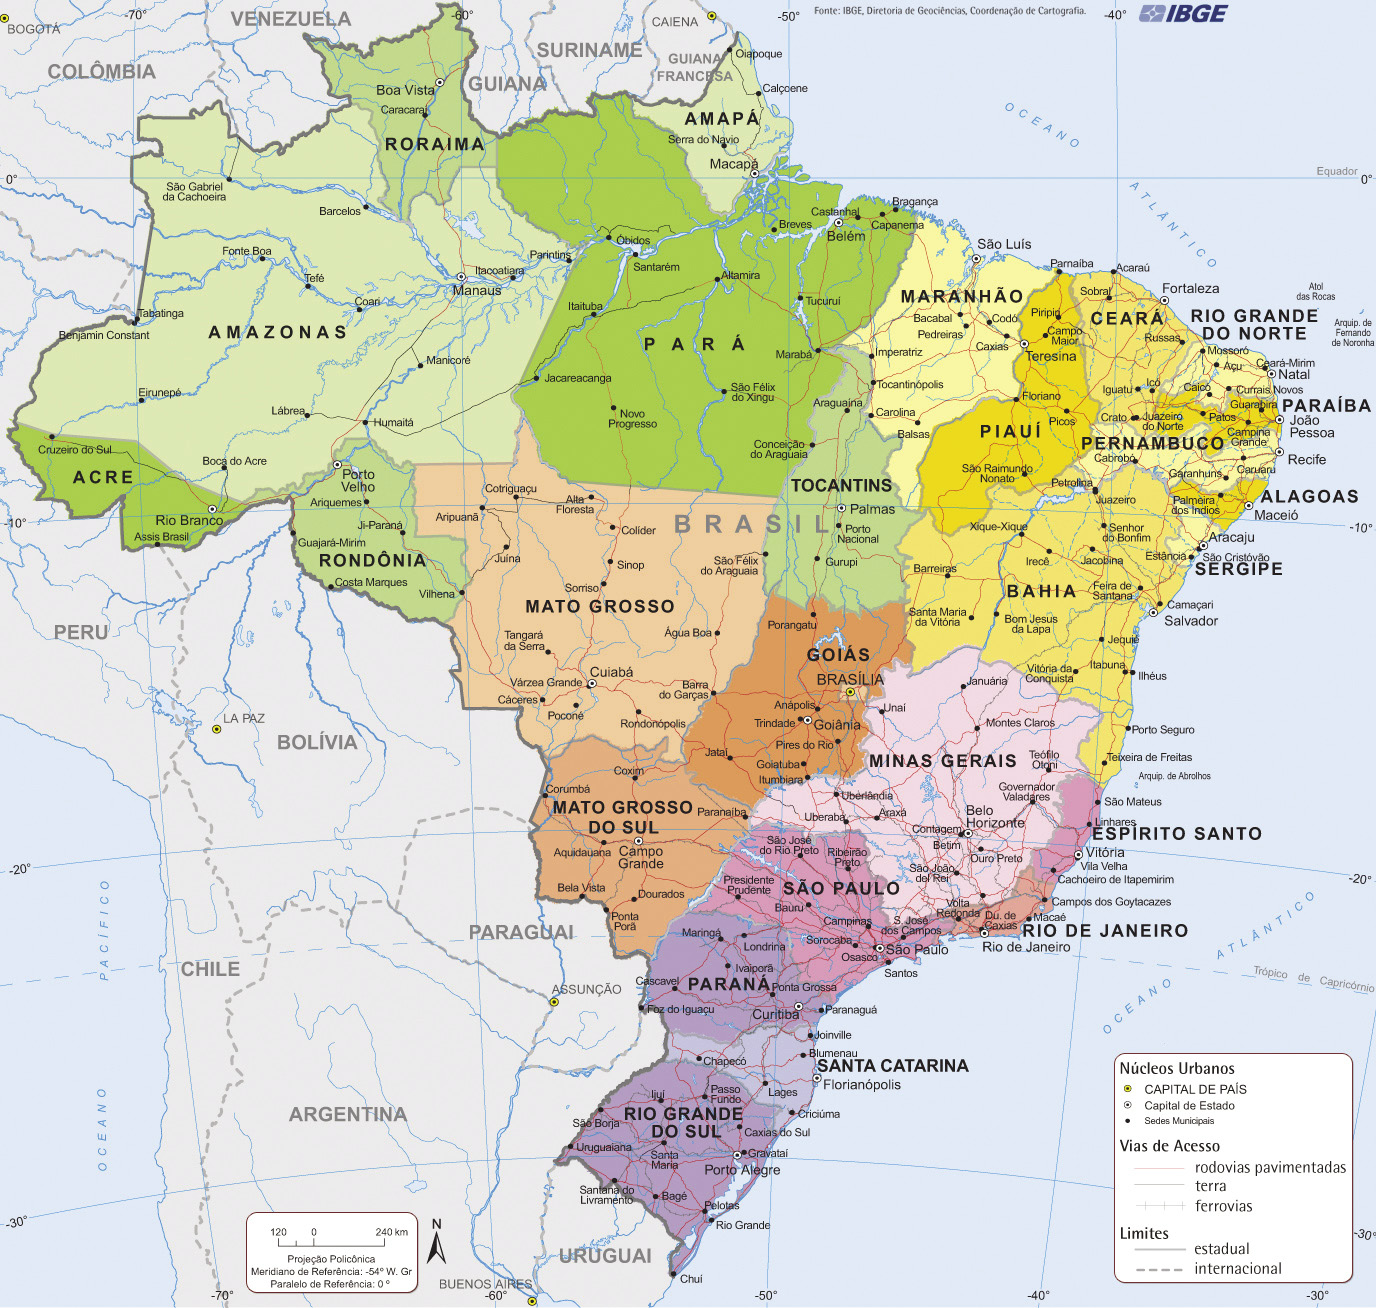 Mapa com a Divisão Política do Brasil